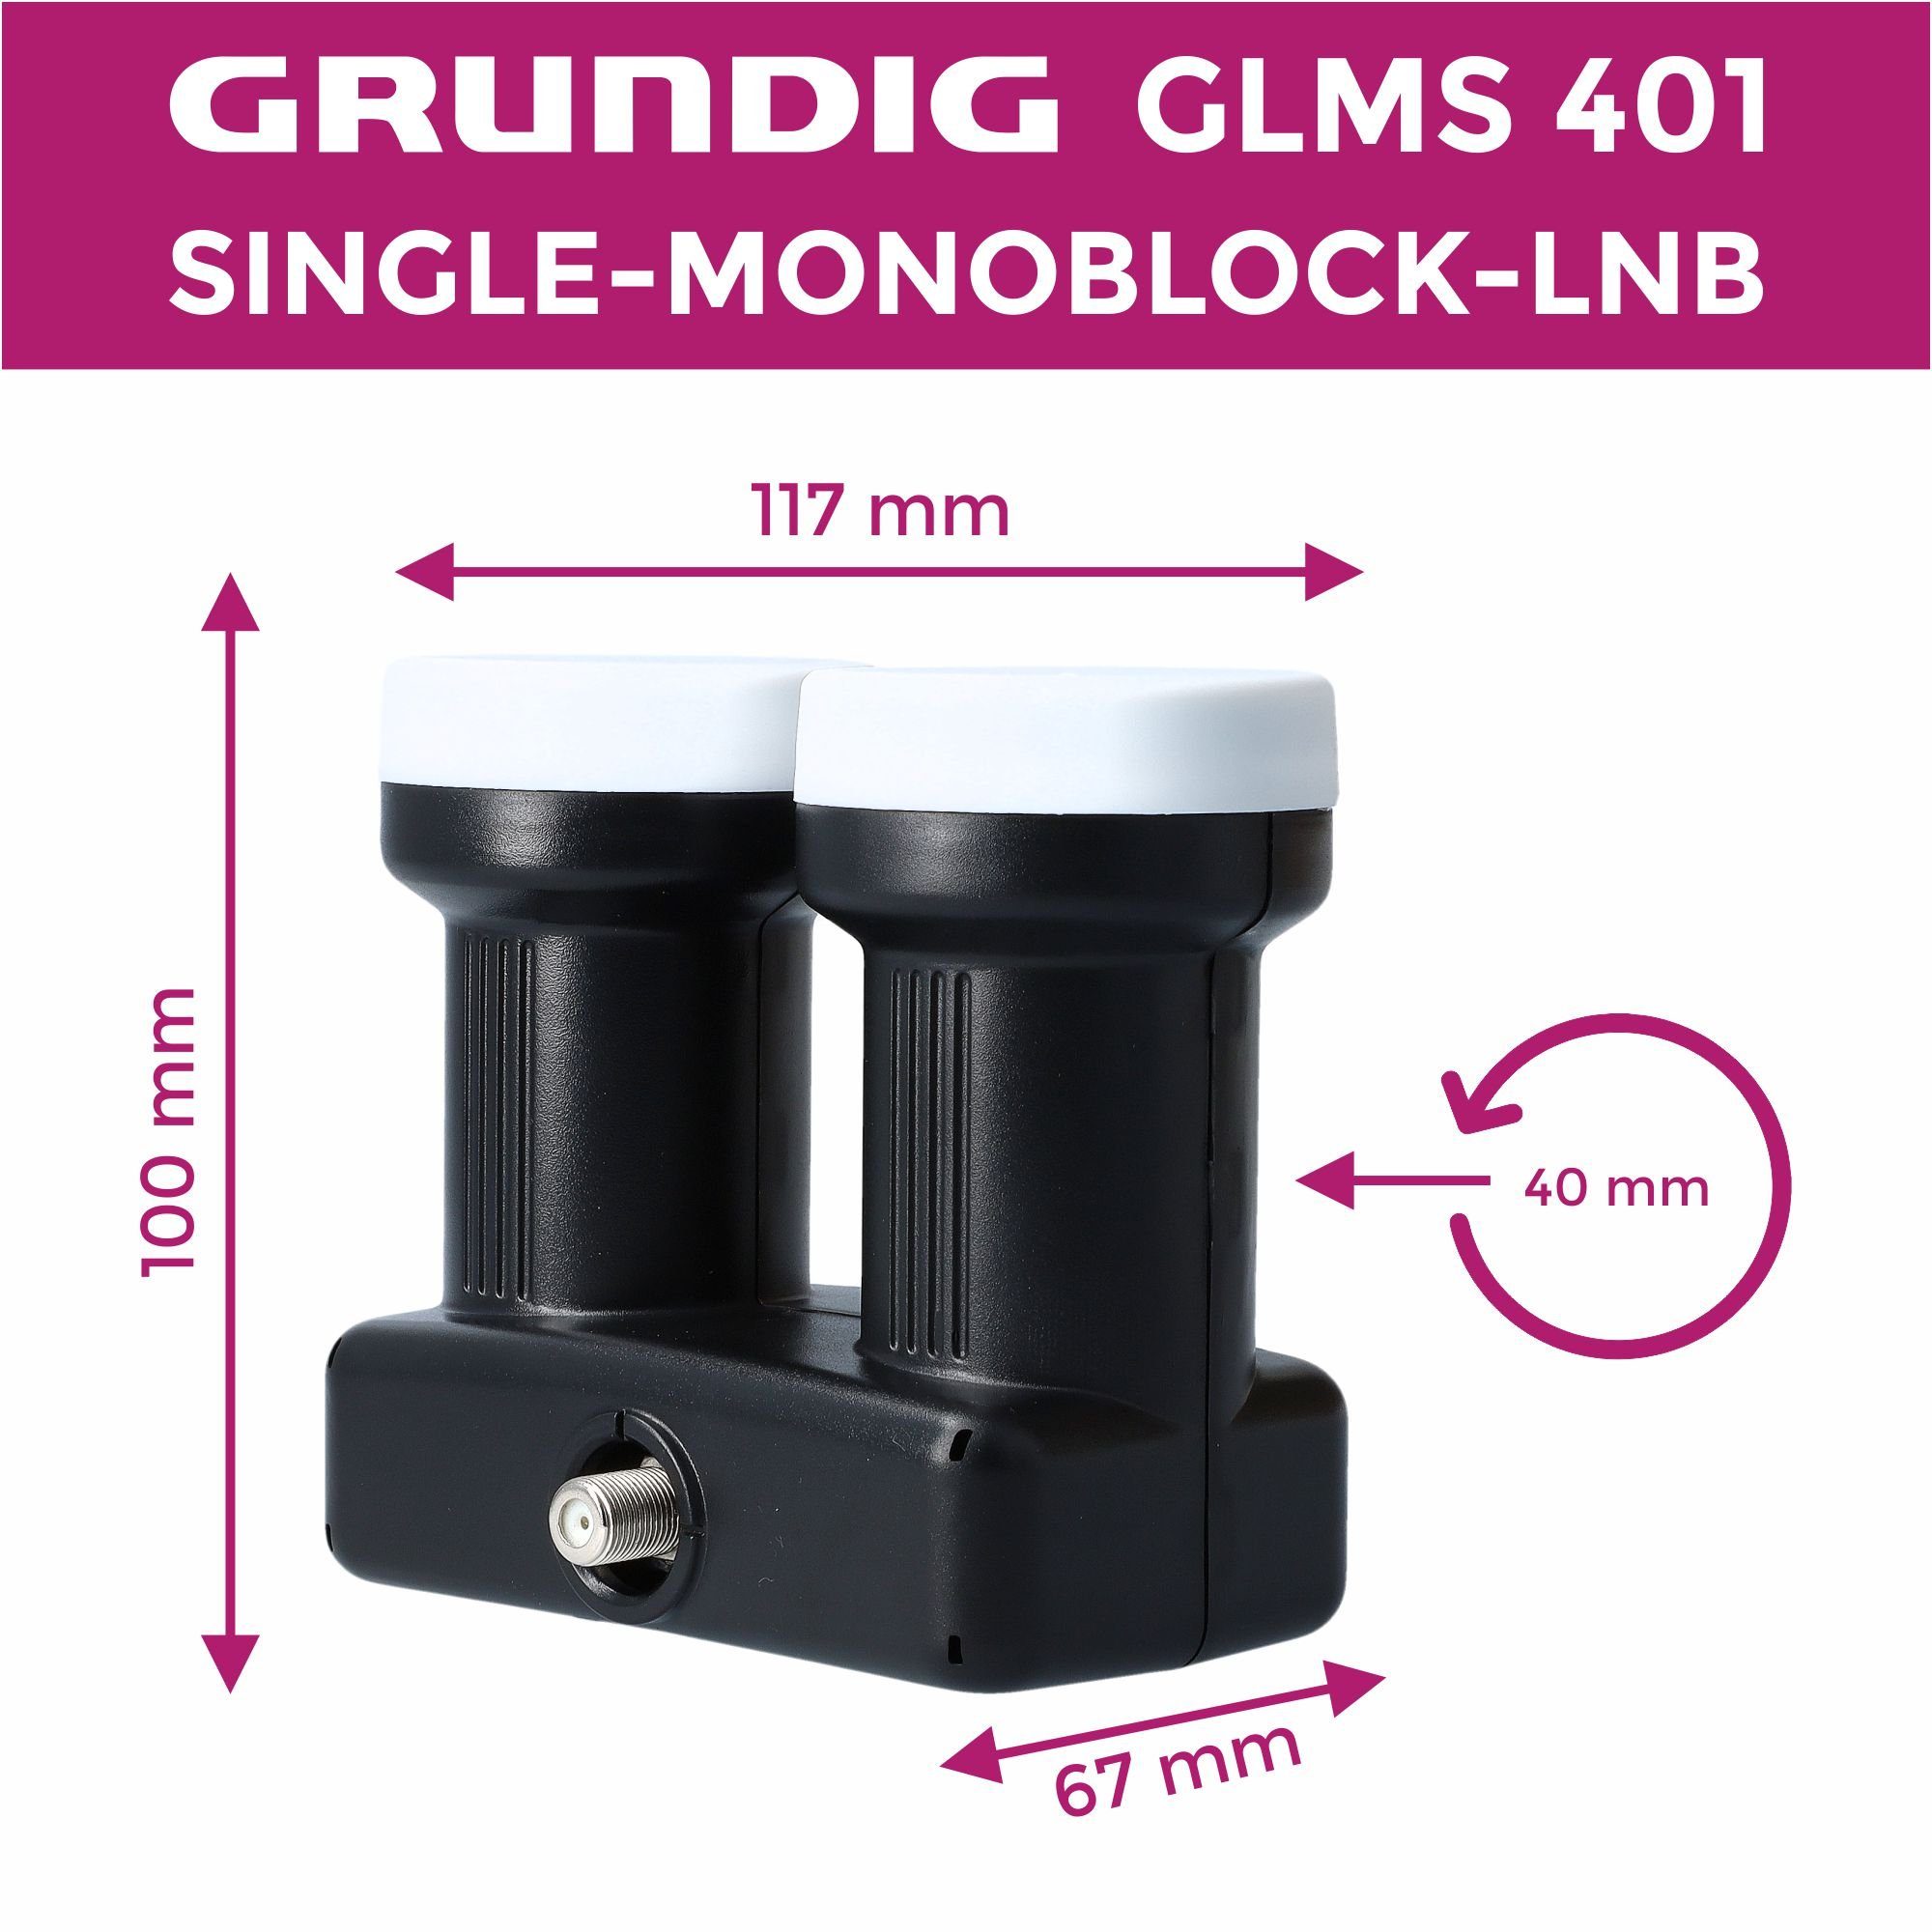 GSS Monoblock Single 2 401 Monoblock-LNB GLMS -Astra mit & Hotbird Gummitülle) Aufdrehhilfe (1 + Satelliten Teilnehmer